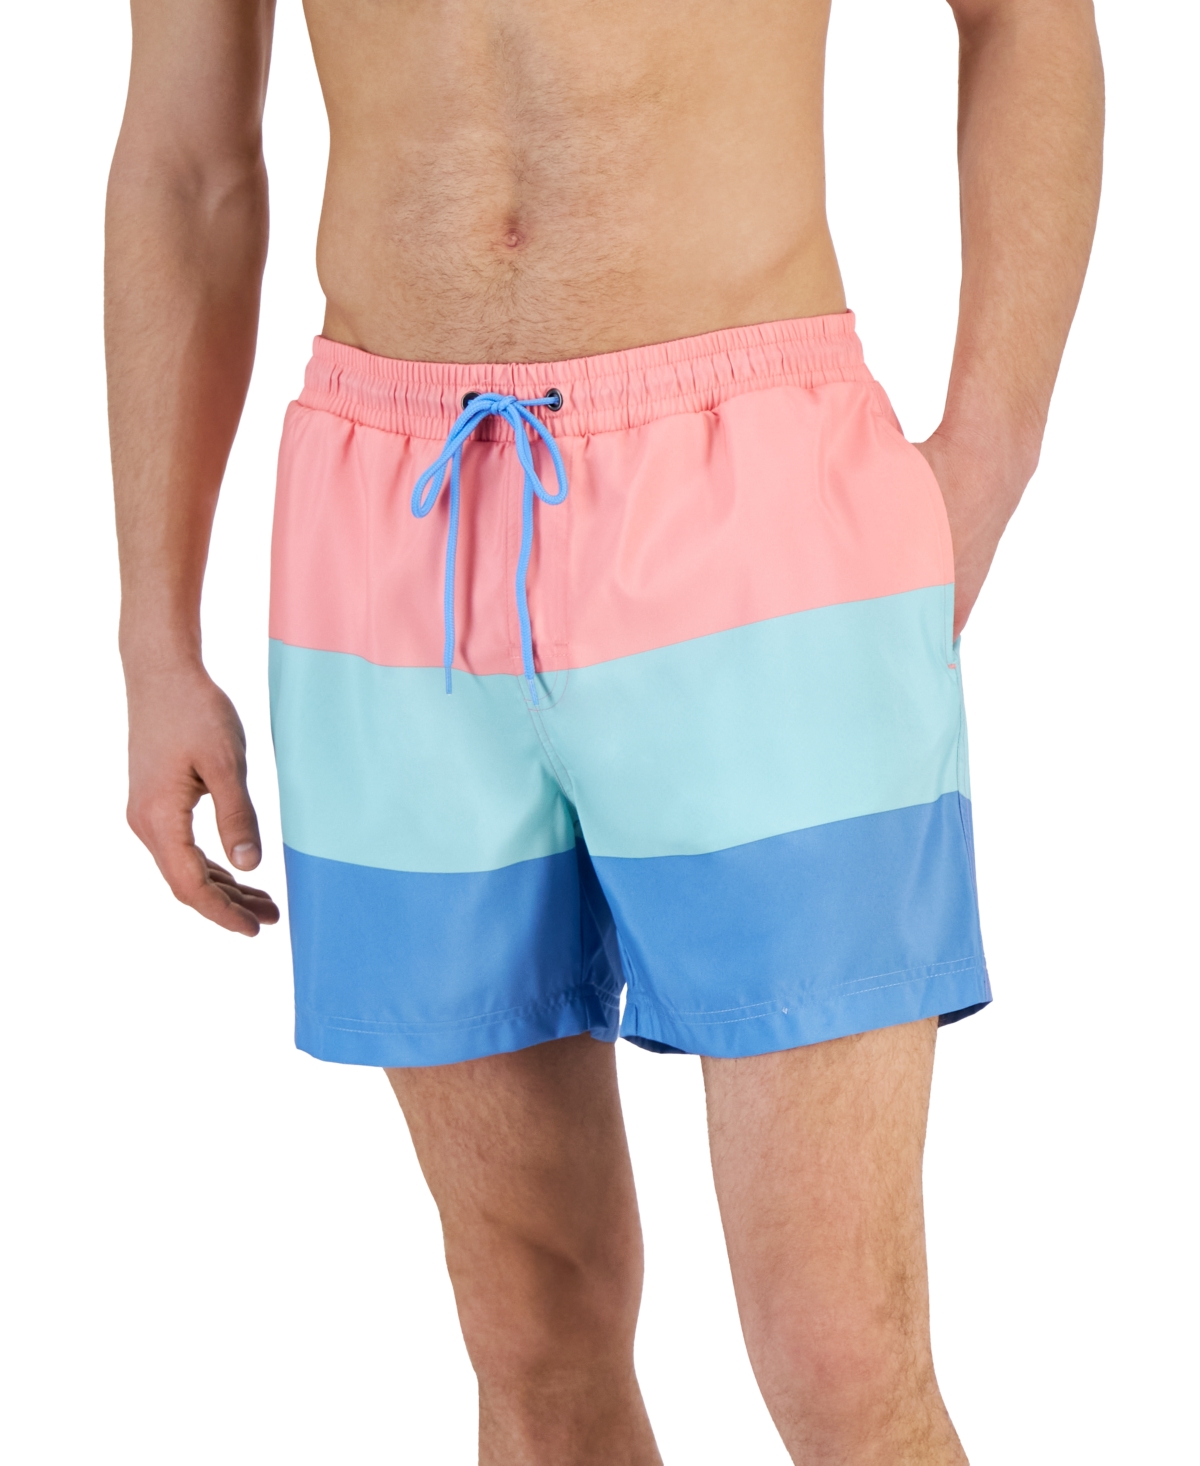 Men's Colorblocked 7 Swim Trunks, Created for Macy's